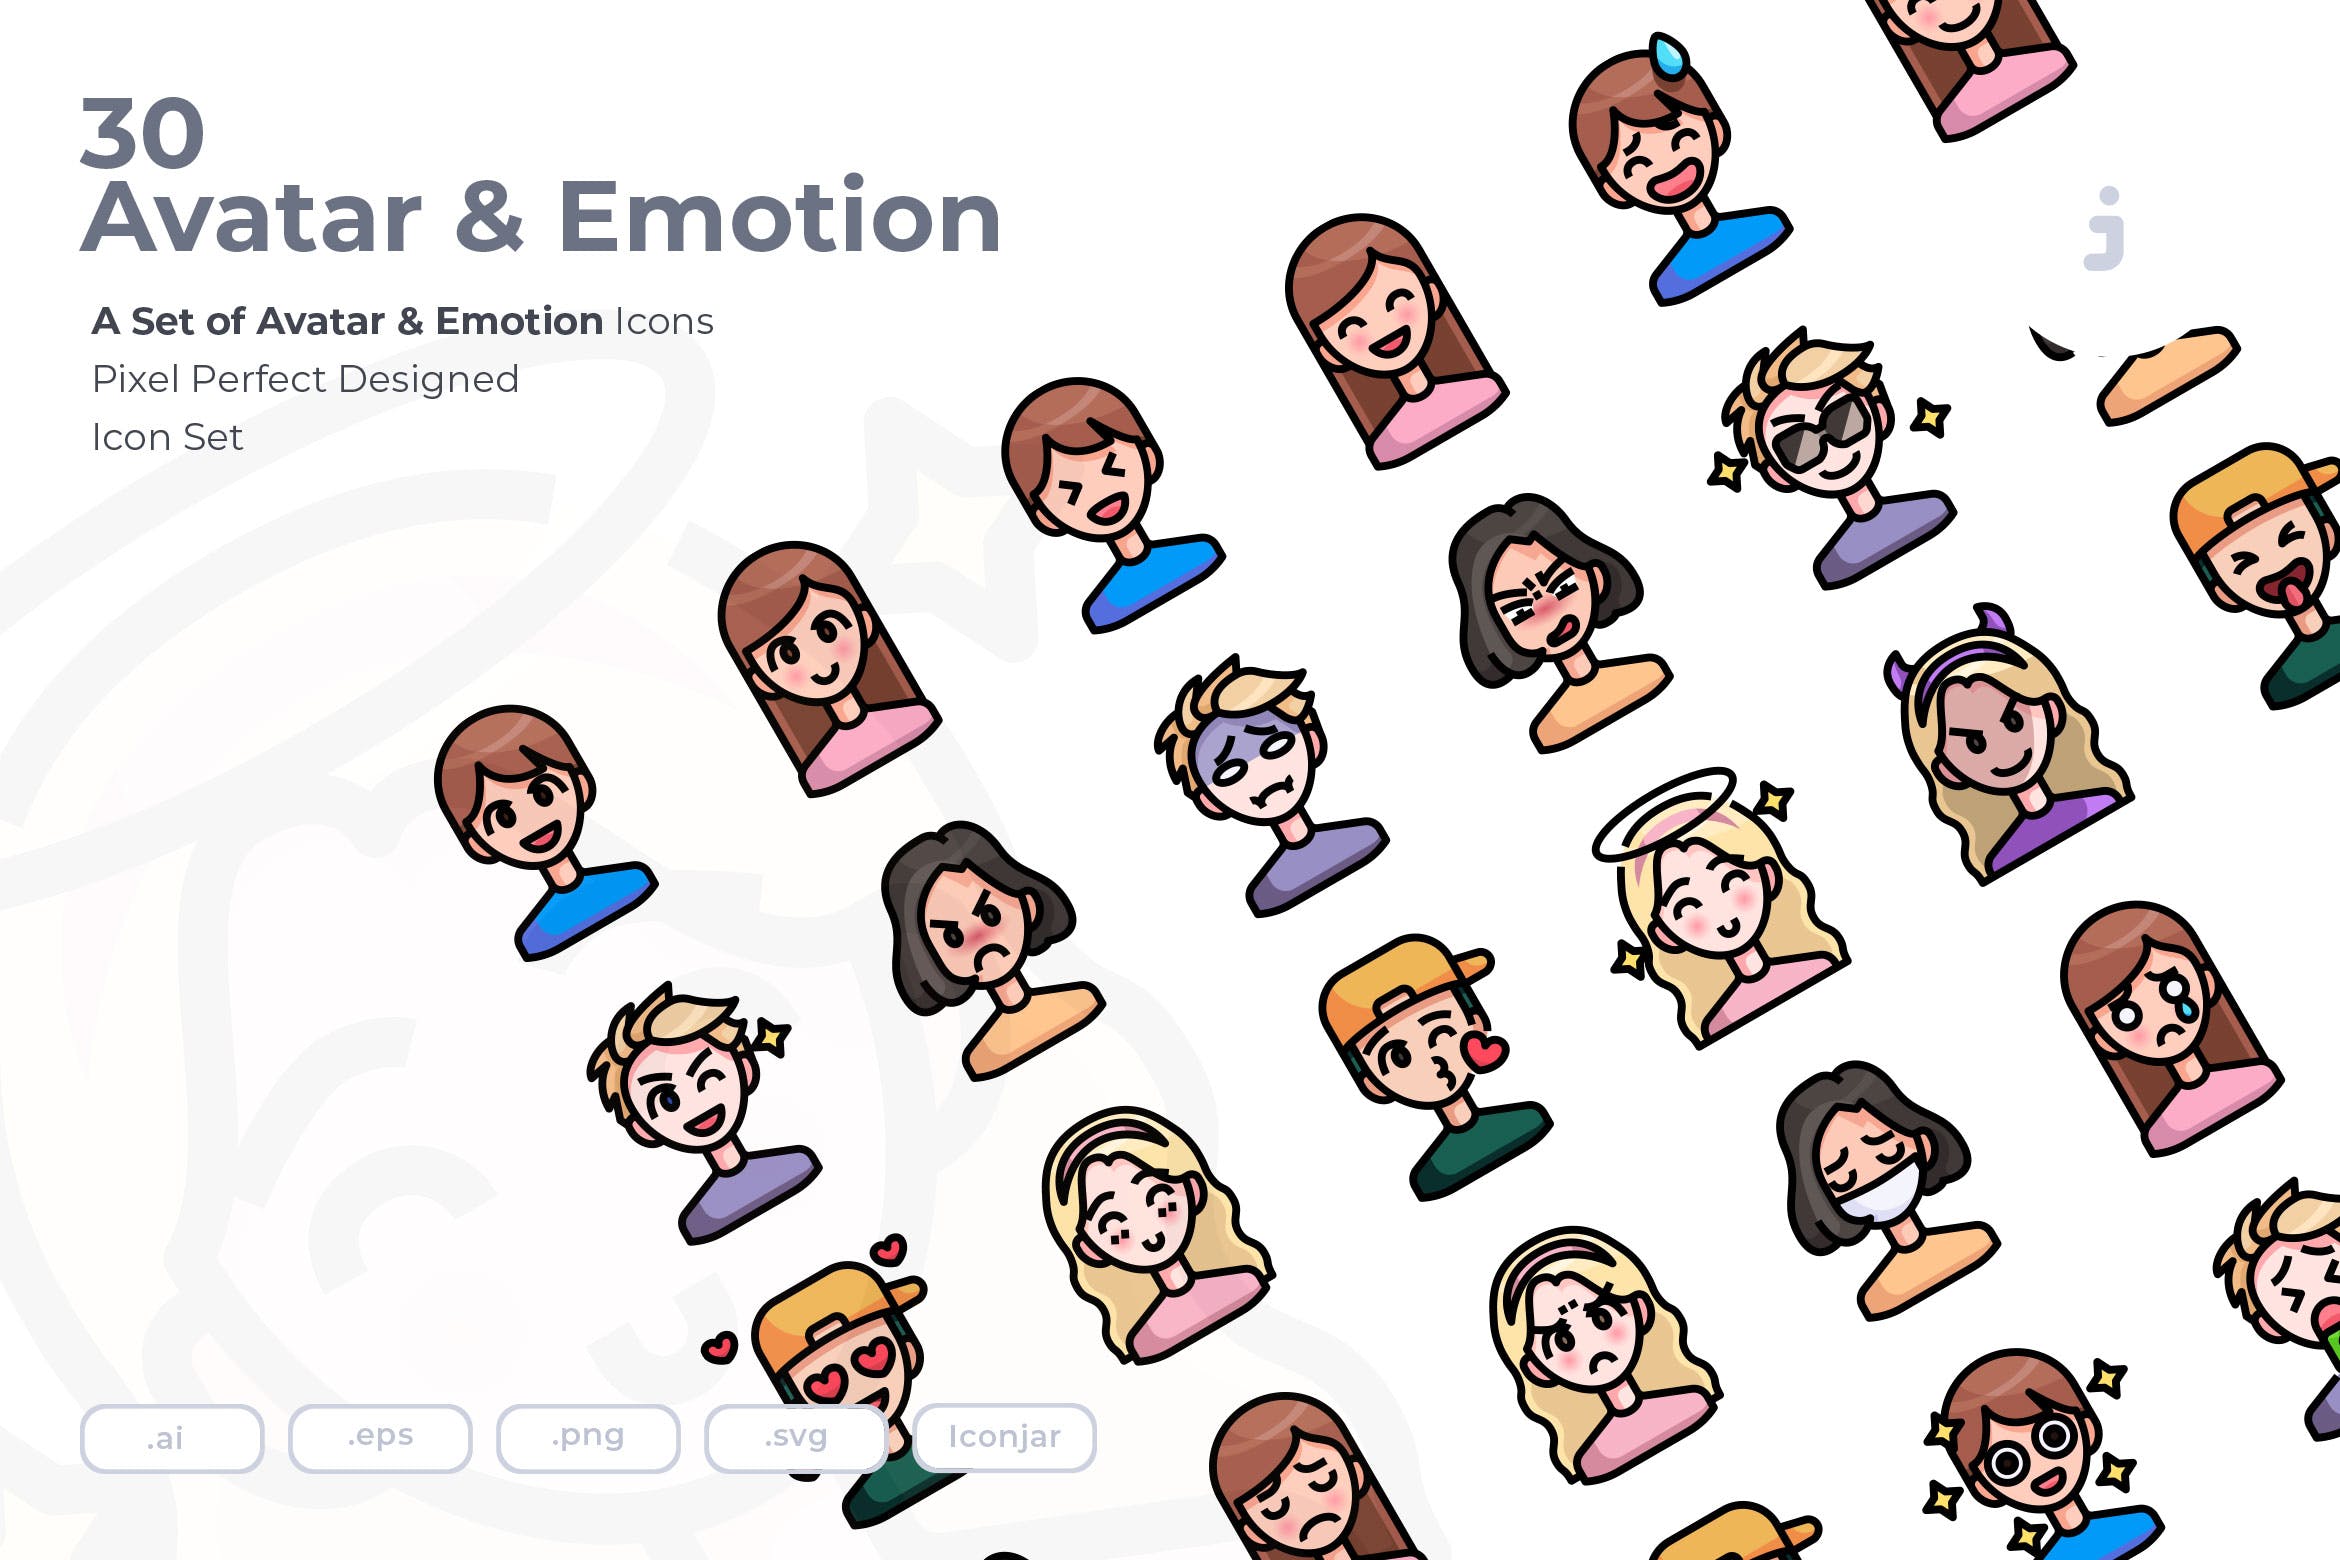 30枚彩色人物头像&表情矢量蚂蚁素材精选图标 30 Avatar and Emotion Icons插图